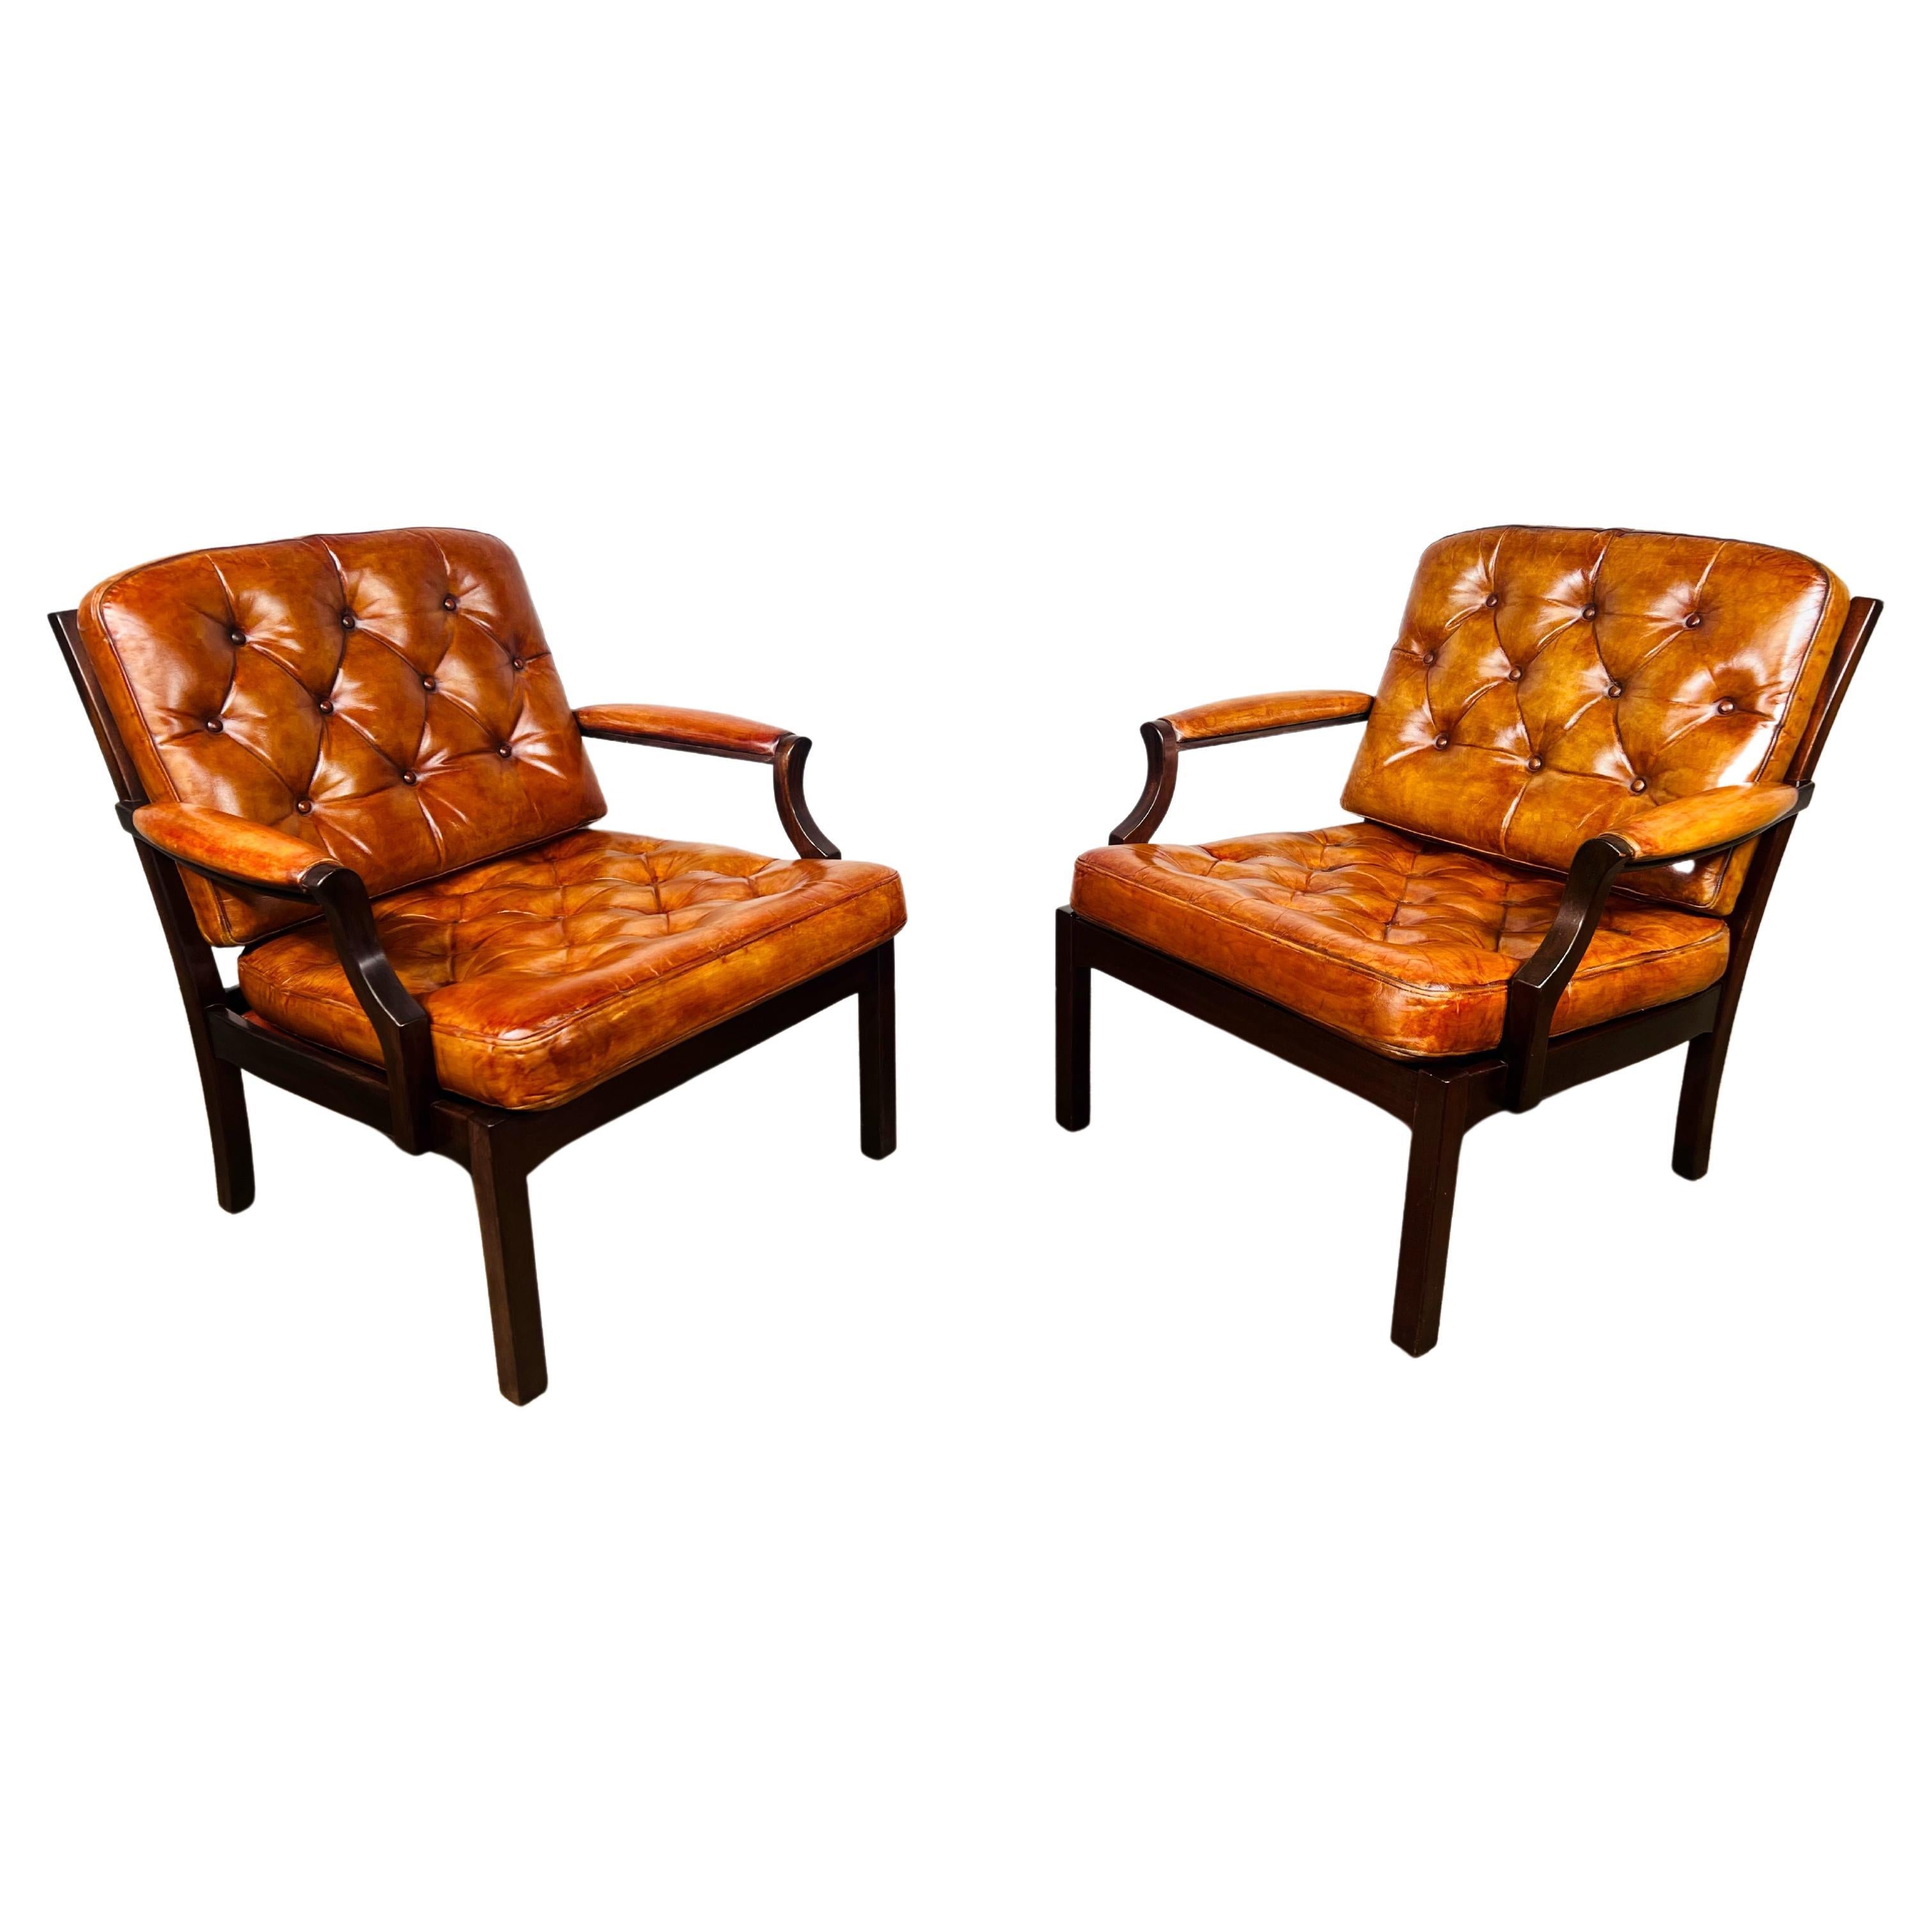 Une élégante paire de fauteuils danois vintage en cuir brun clair n°734